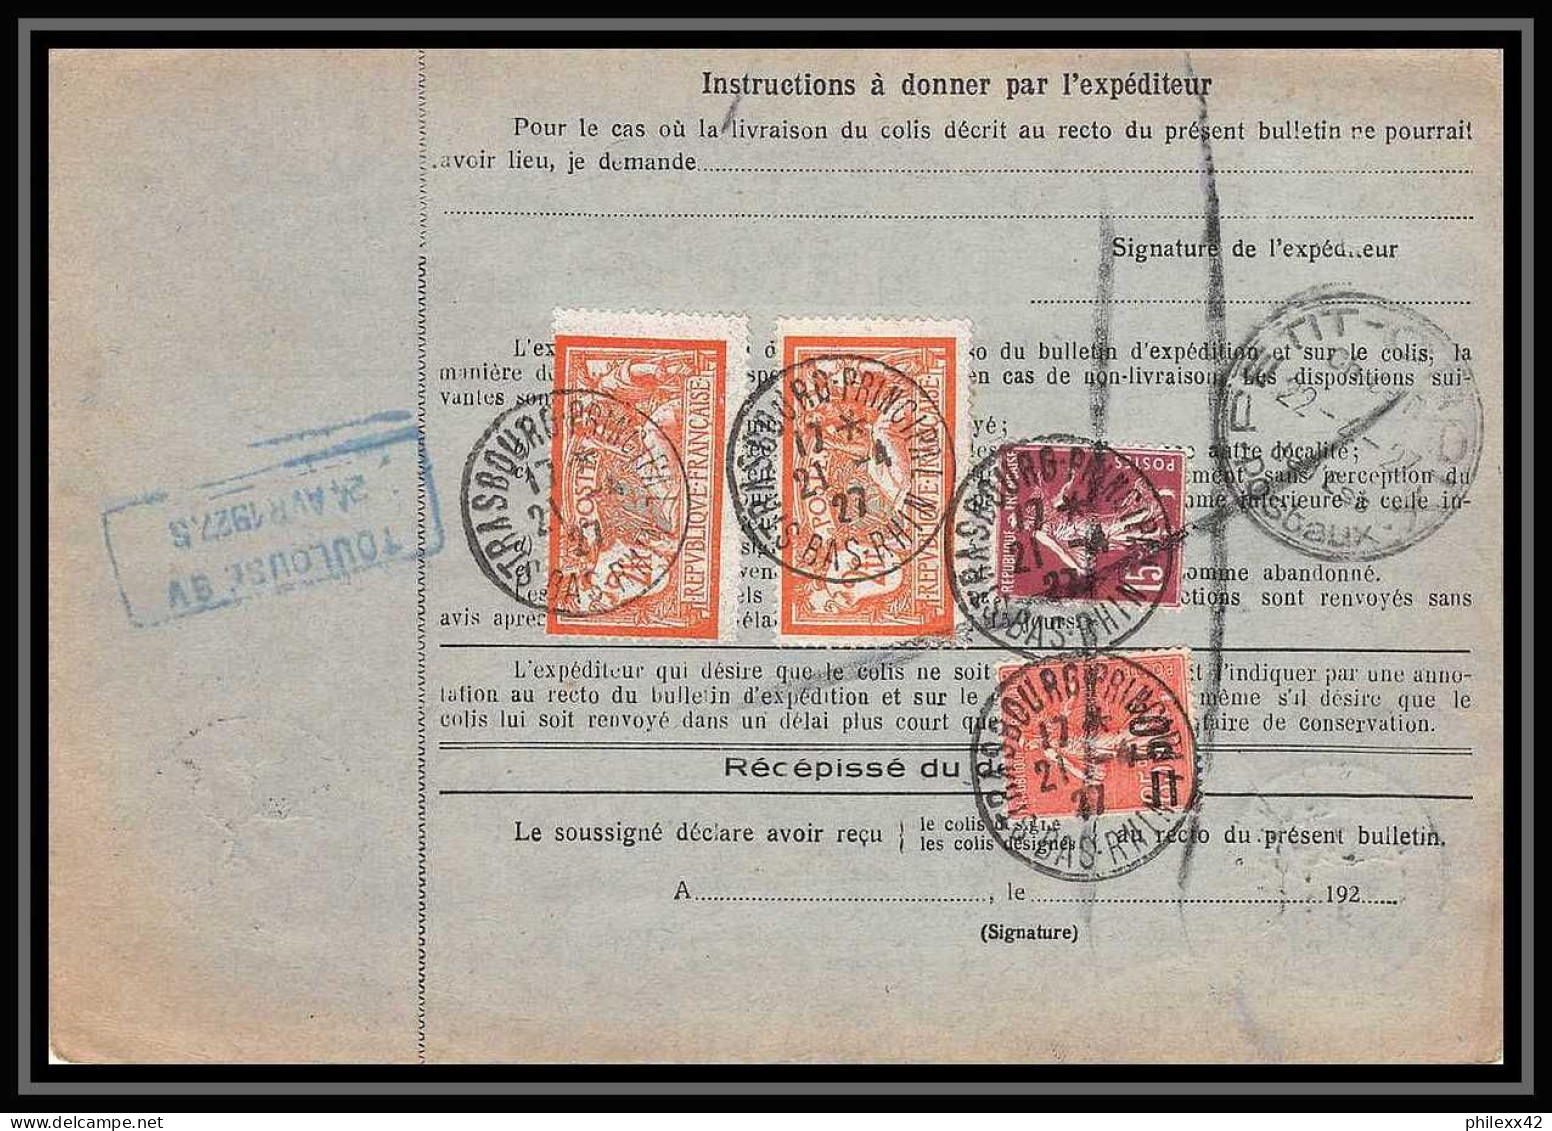 25086 Bulletin D'expédition France Colis Postaux Fiscal Haut Rhin 1927 Strasbourg Semeuse Merson 145 Alsace-Lorraine  - Brieven & Documenten